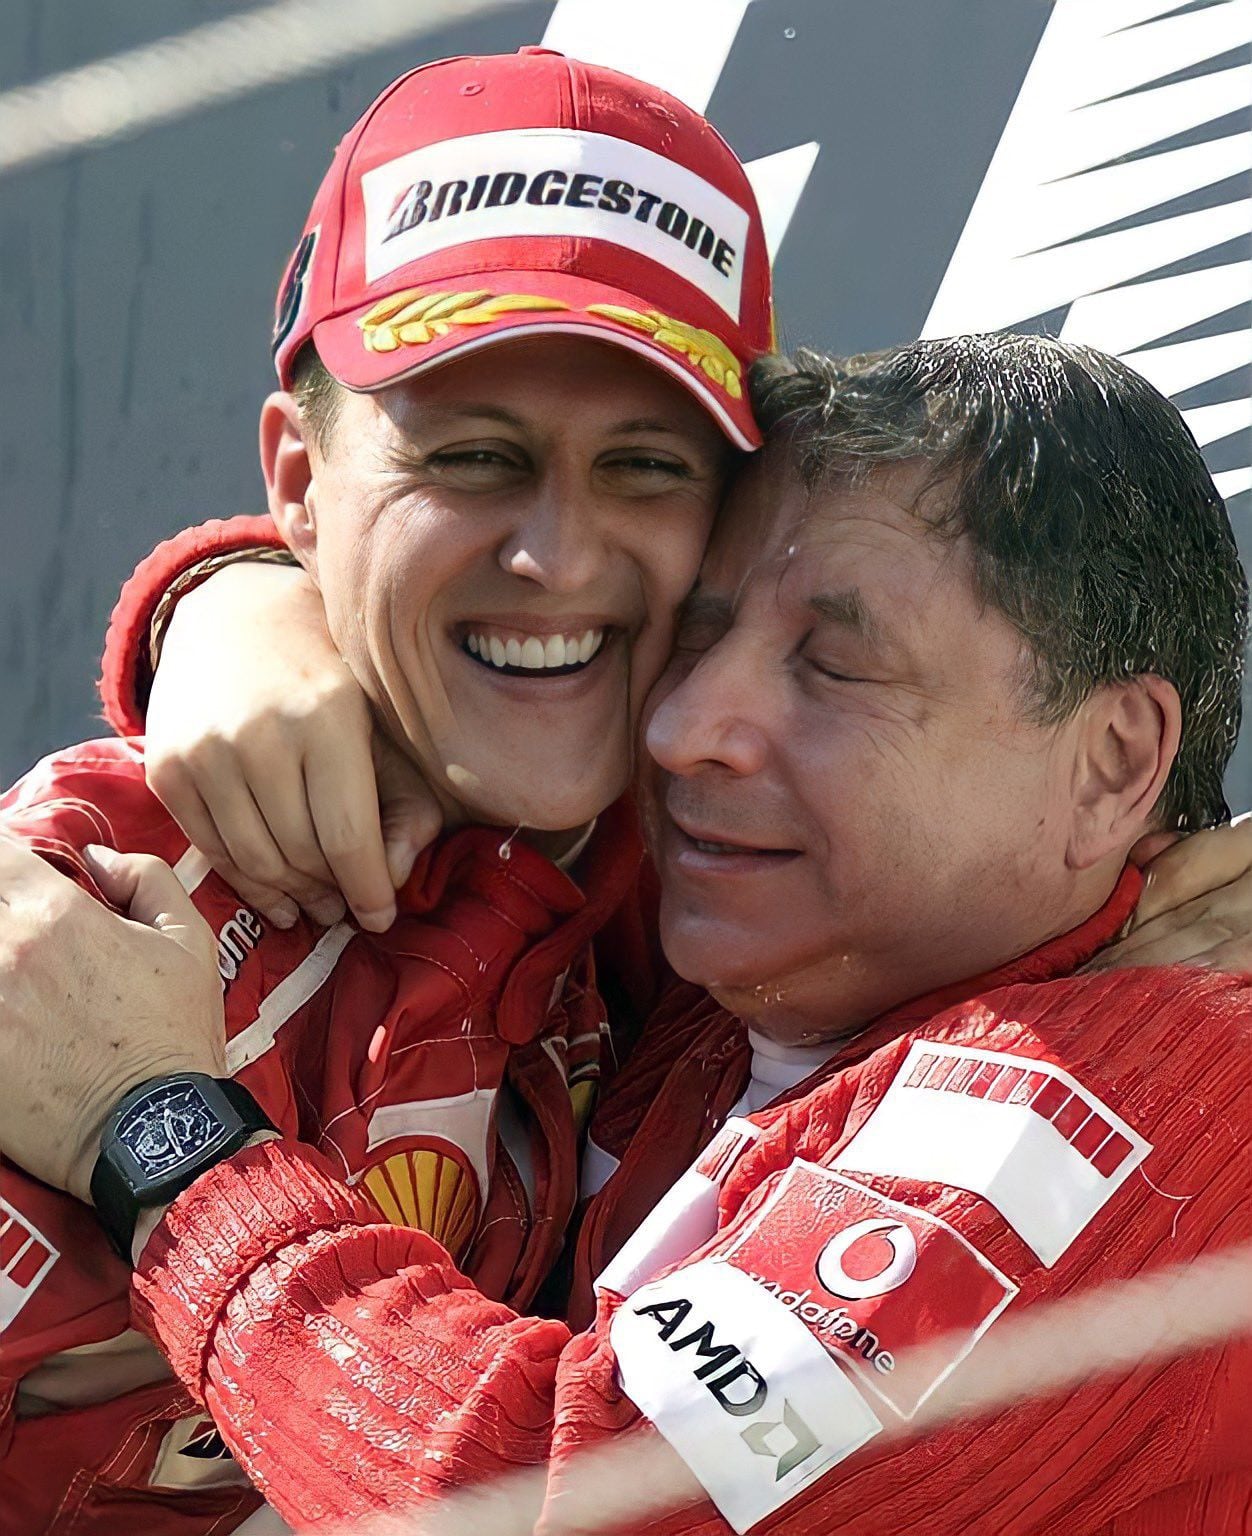 Michael Schumacher y Jean Todt